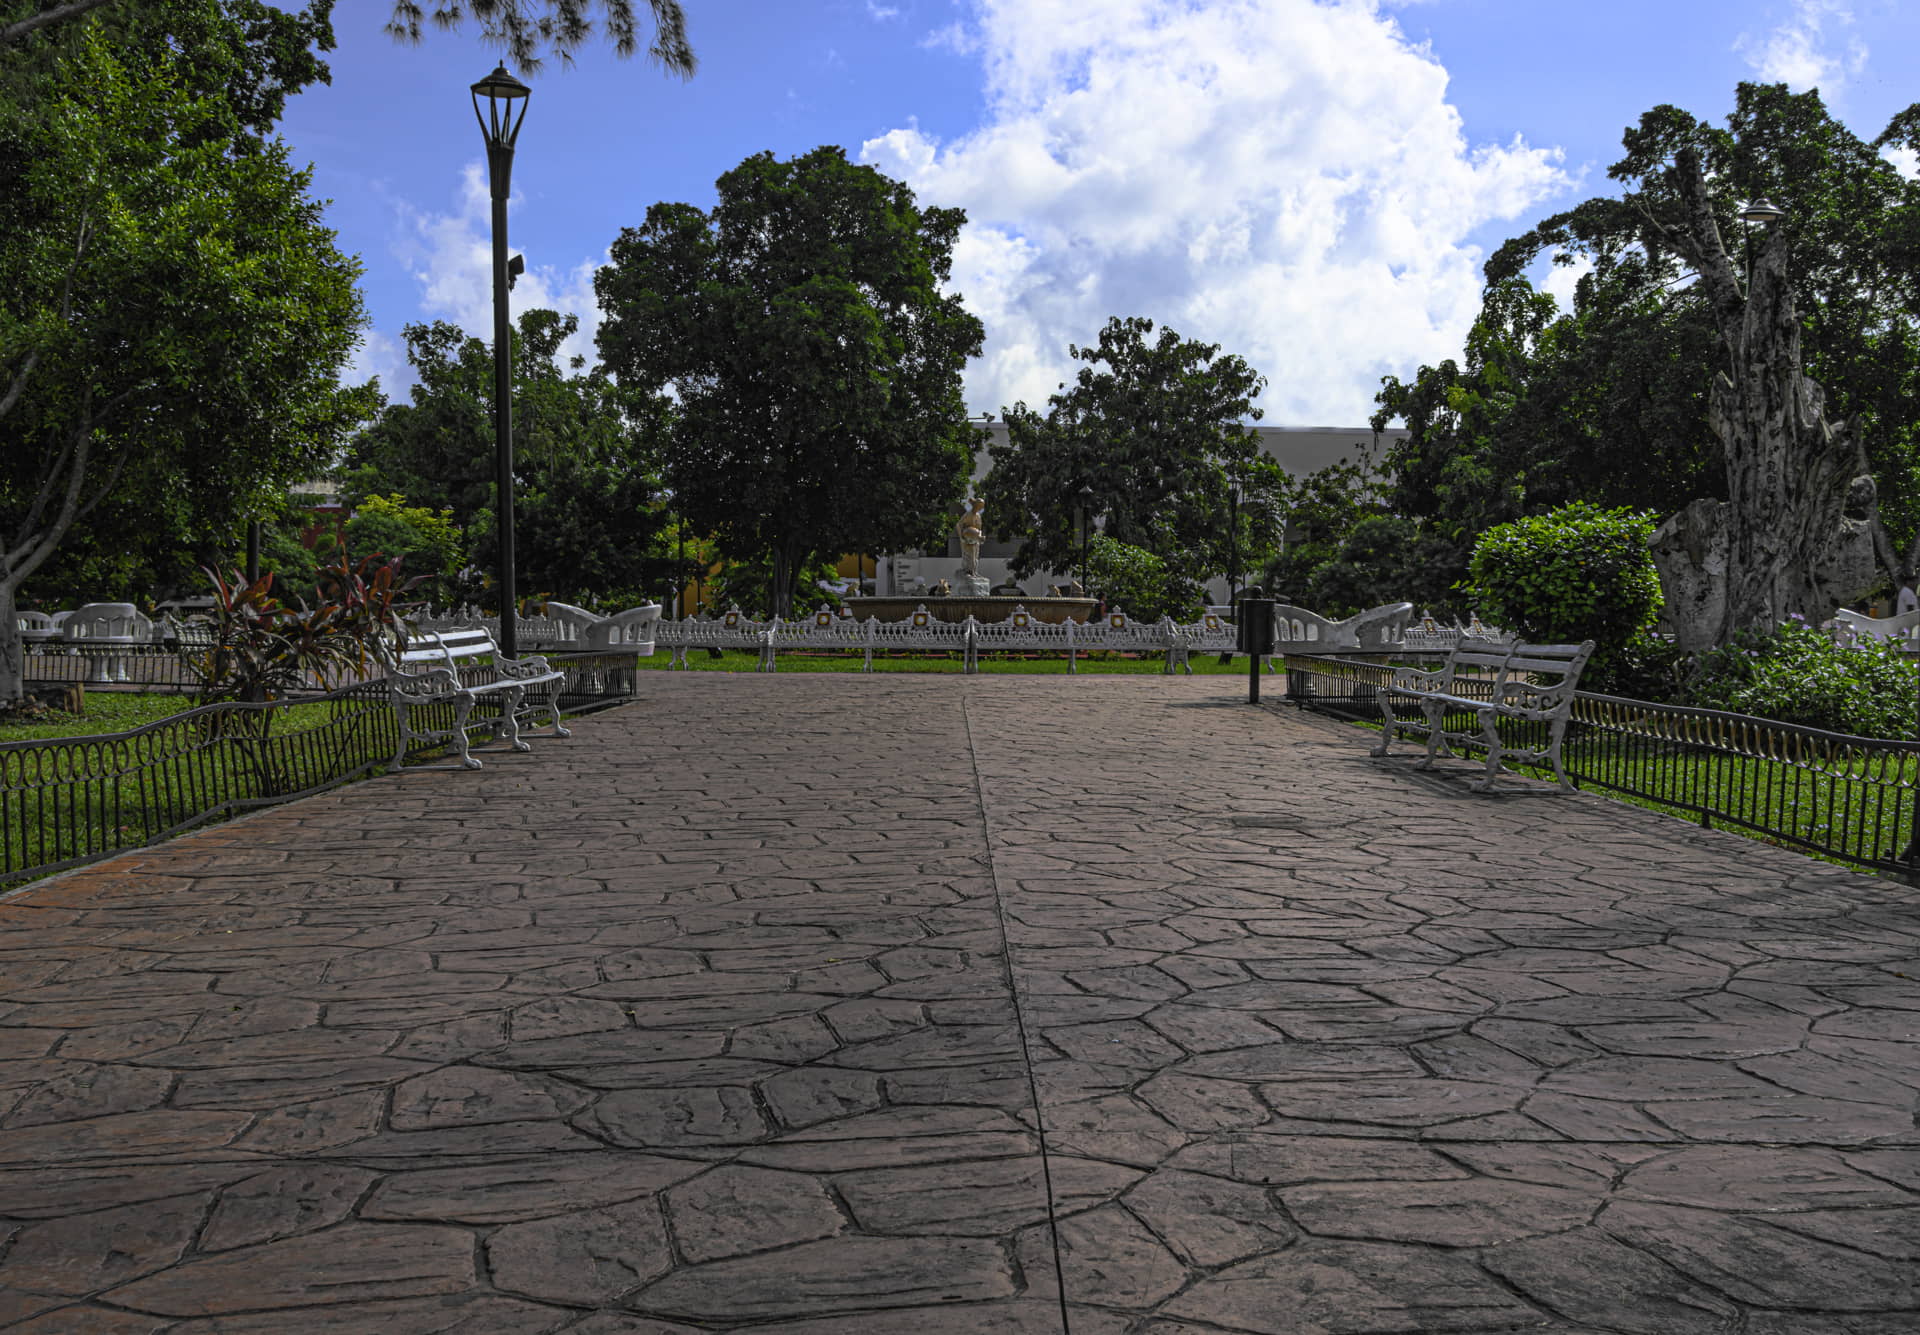  Parque con suelo de piedra hecho con hormigón impreso en León.
